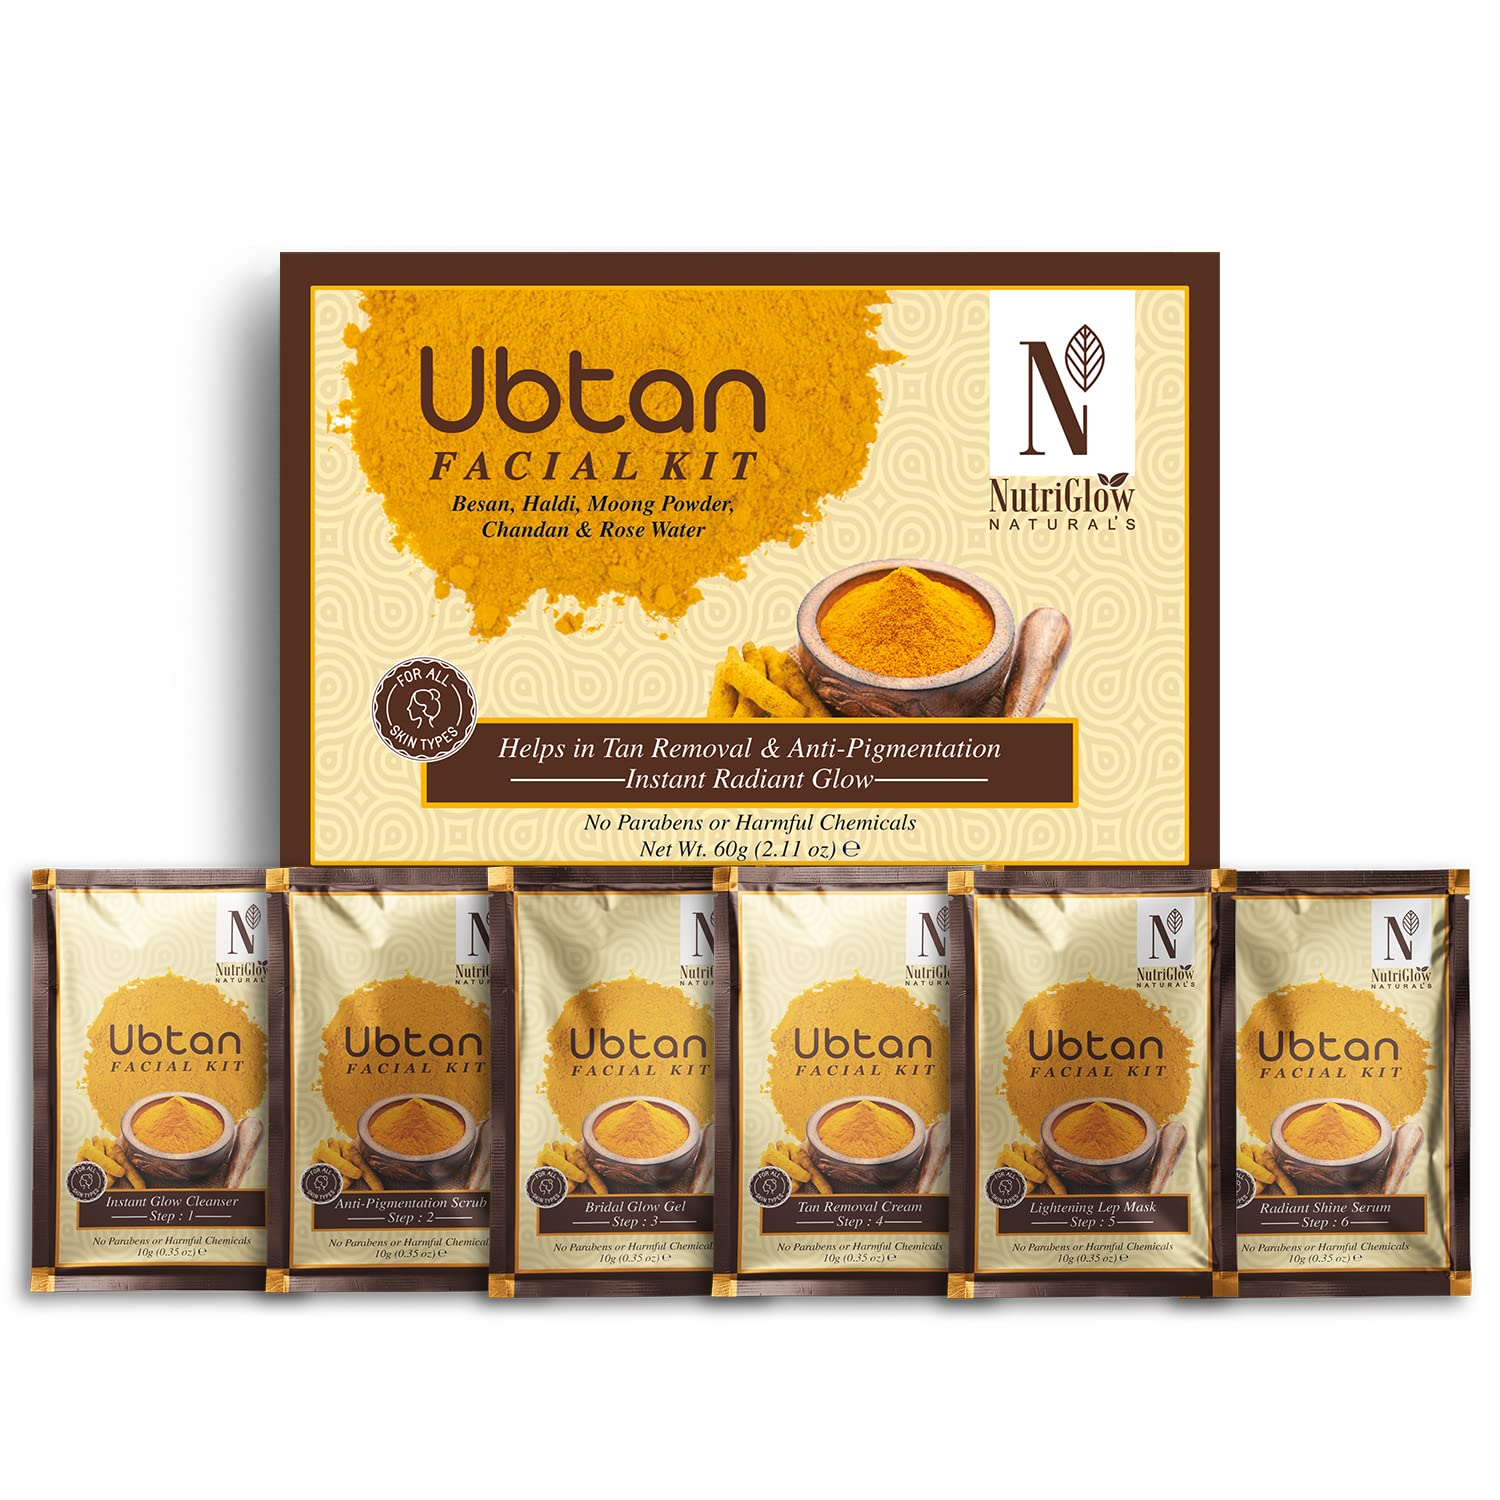 Buy NutriGlow NATURAL'S Ubtan Facial Kit